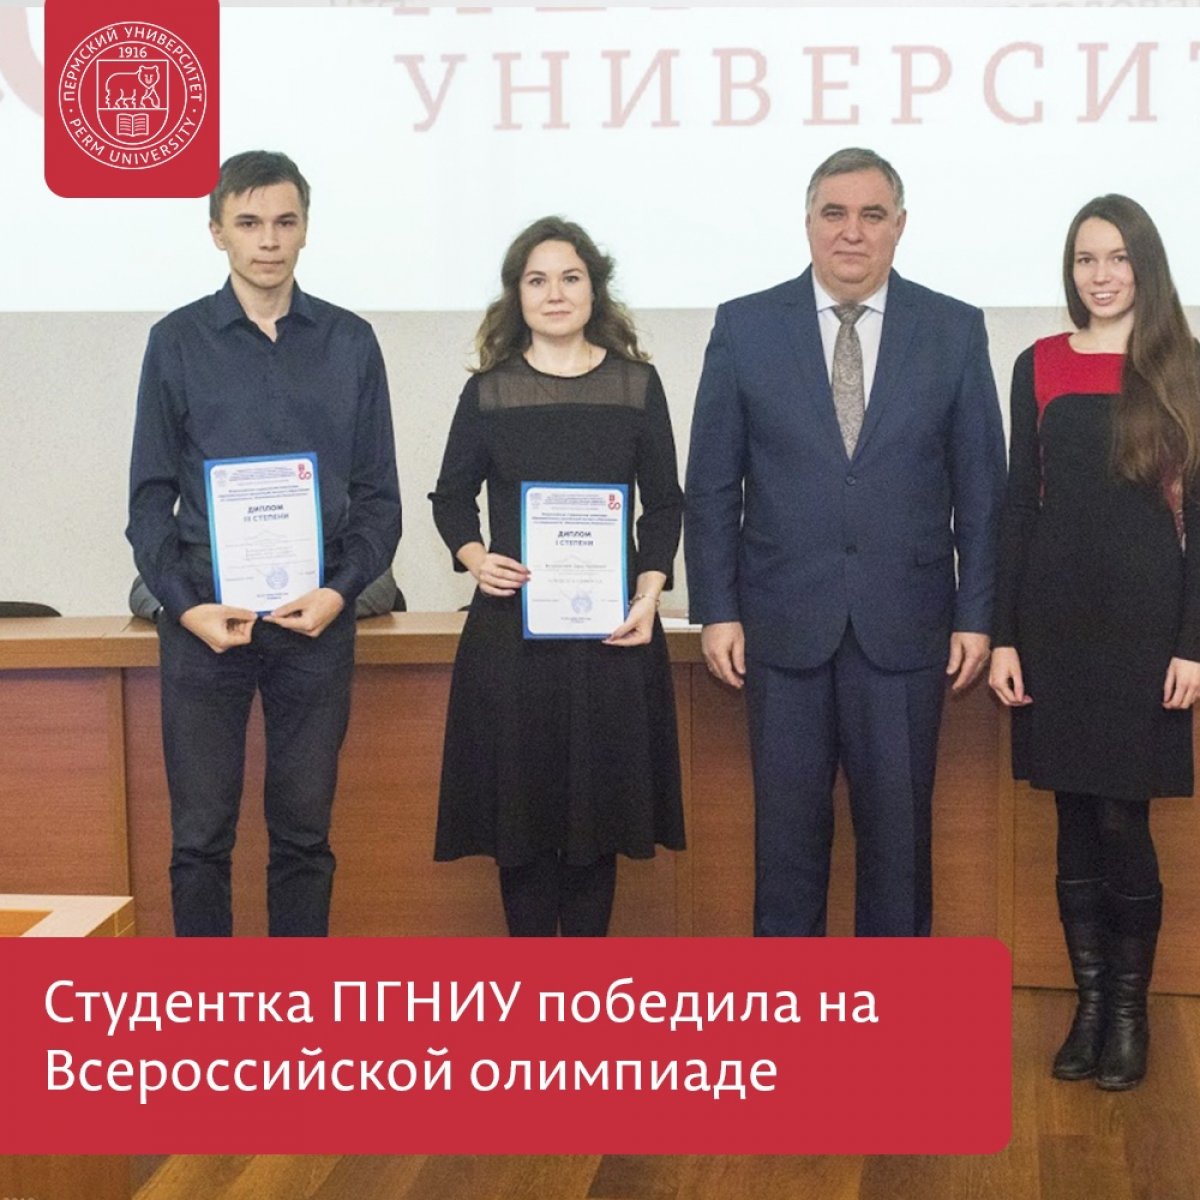 Студентка ПГНИУ победила на Всероссийской олимпиаде по специальности «Экономическая безопасность»